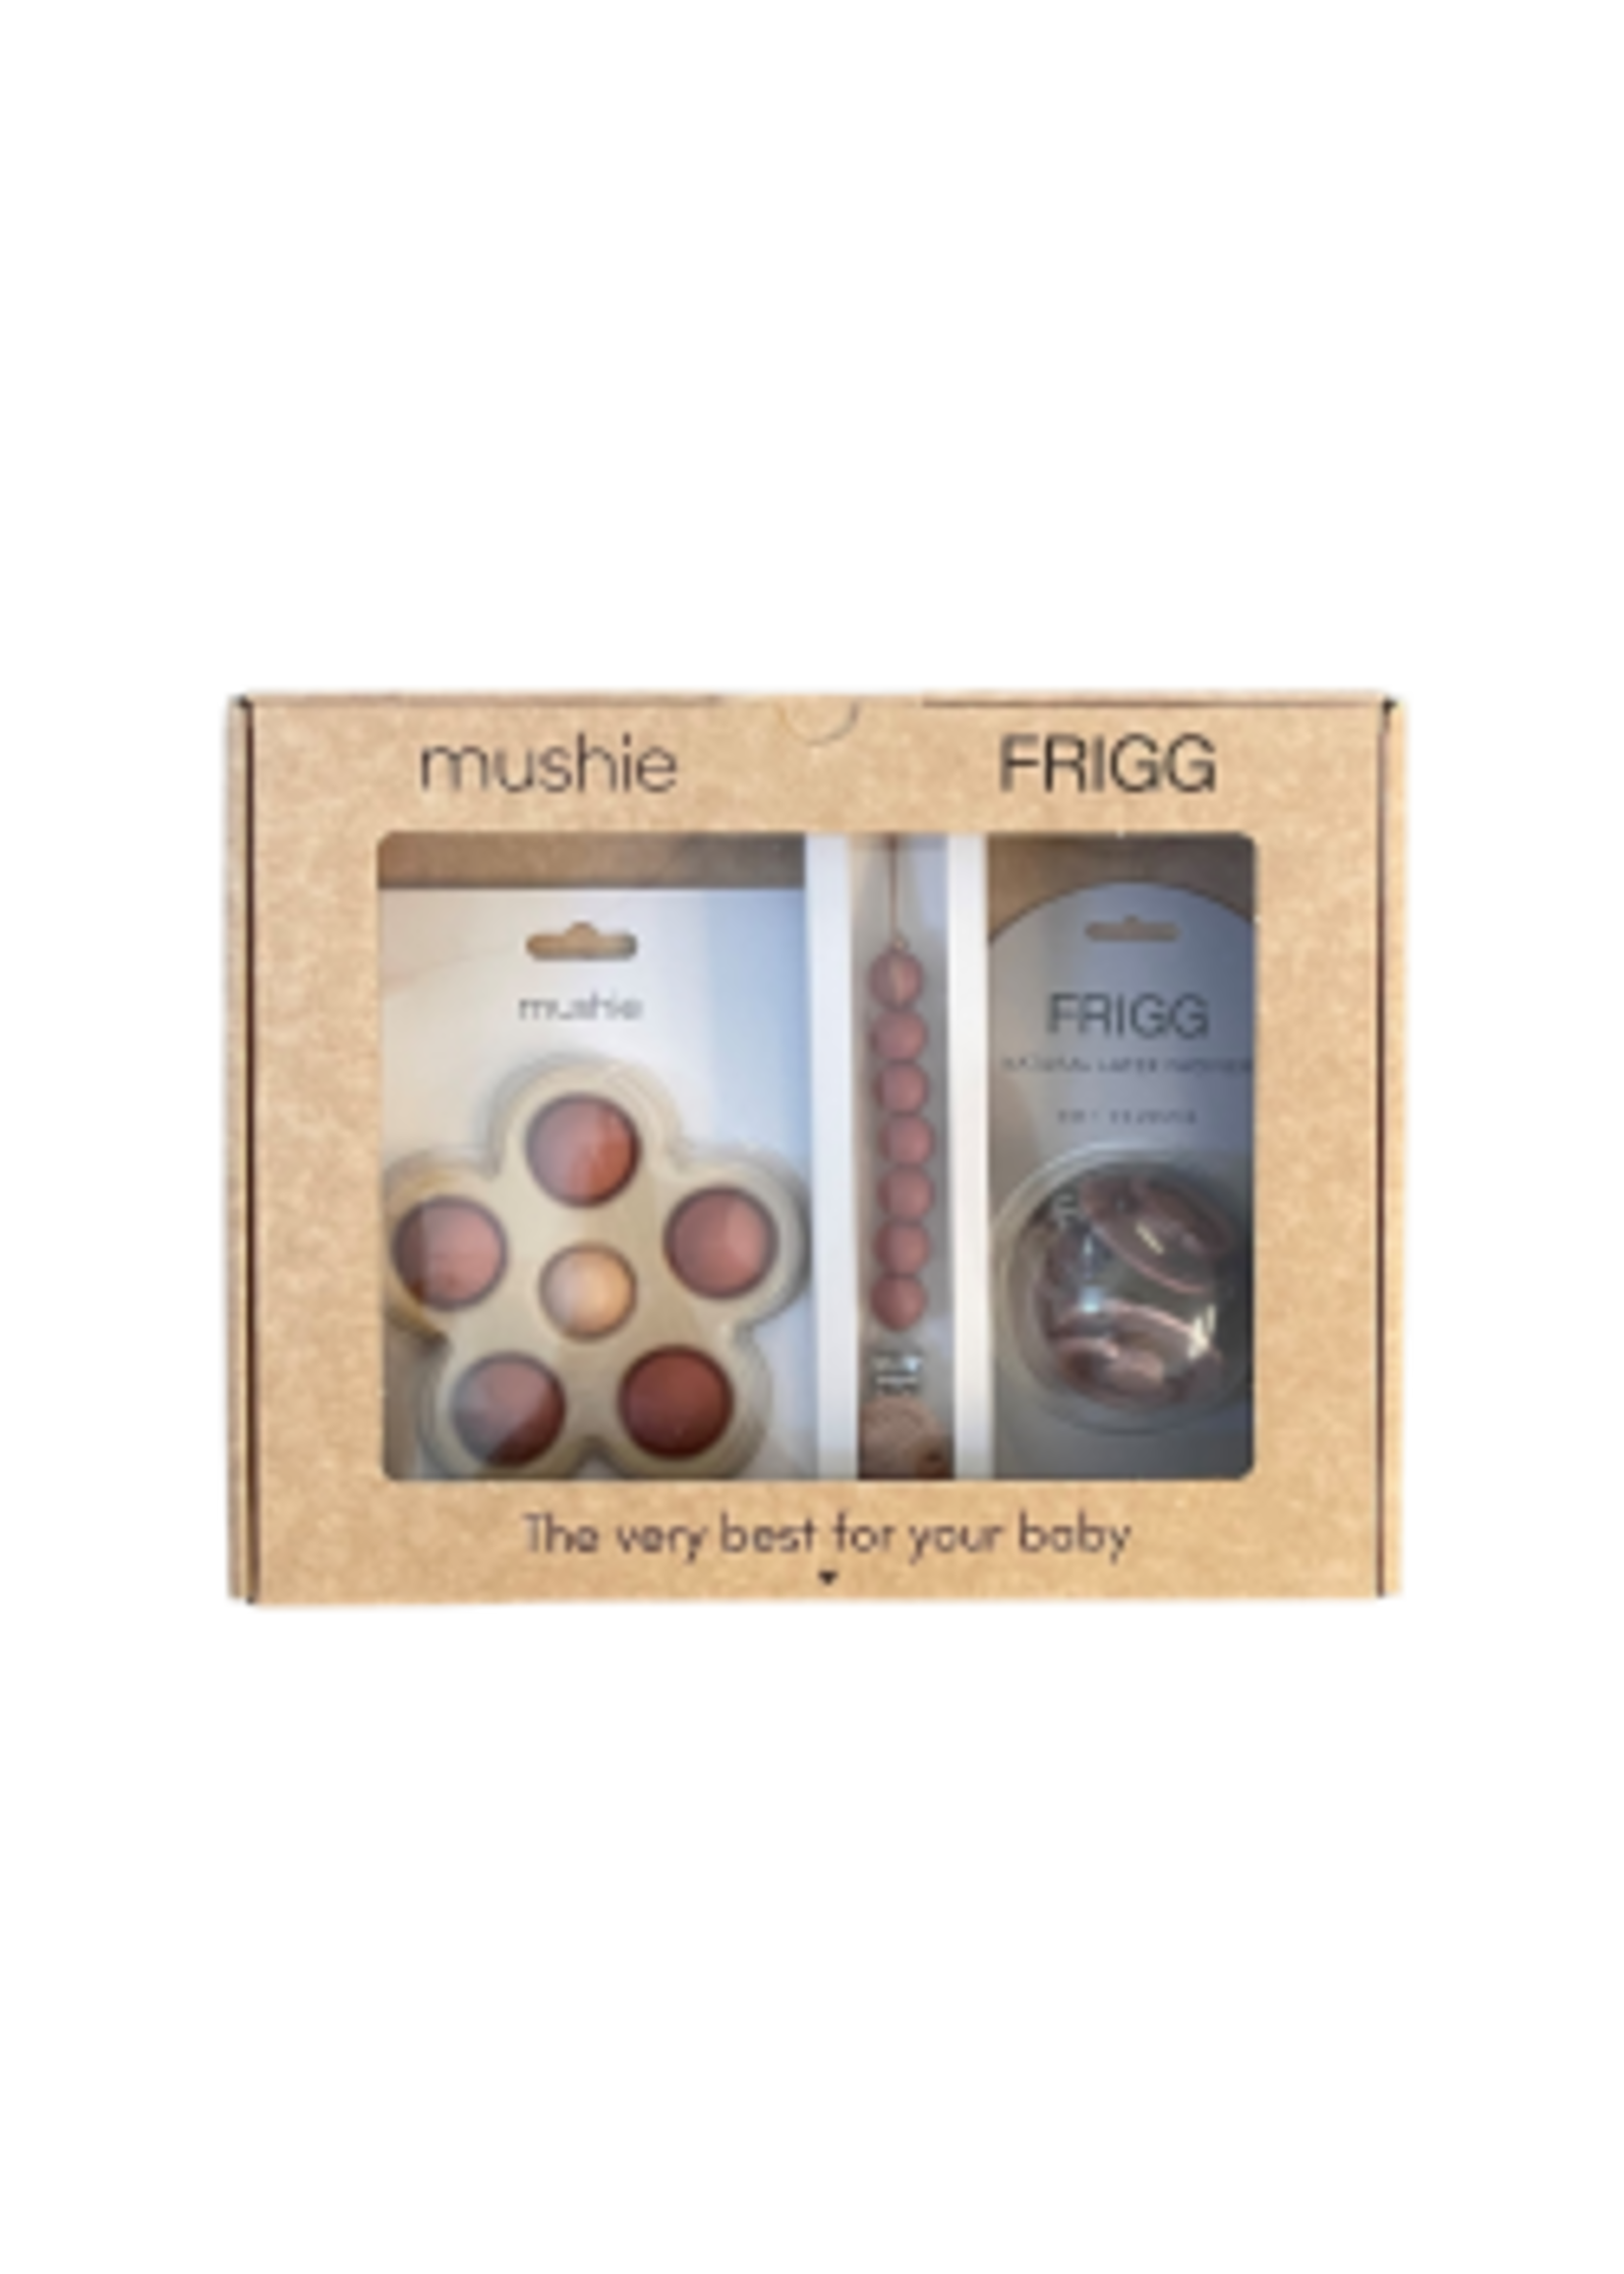 Mushie Frigg / Mushie giftbox girl